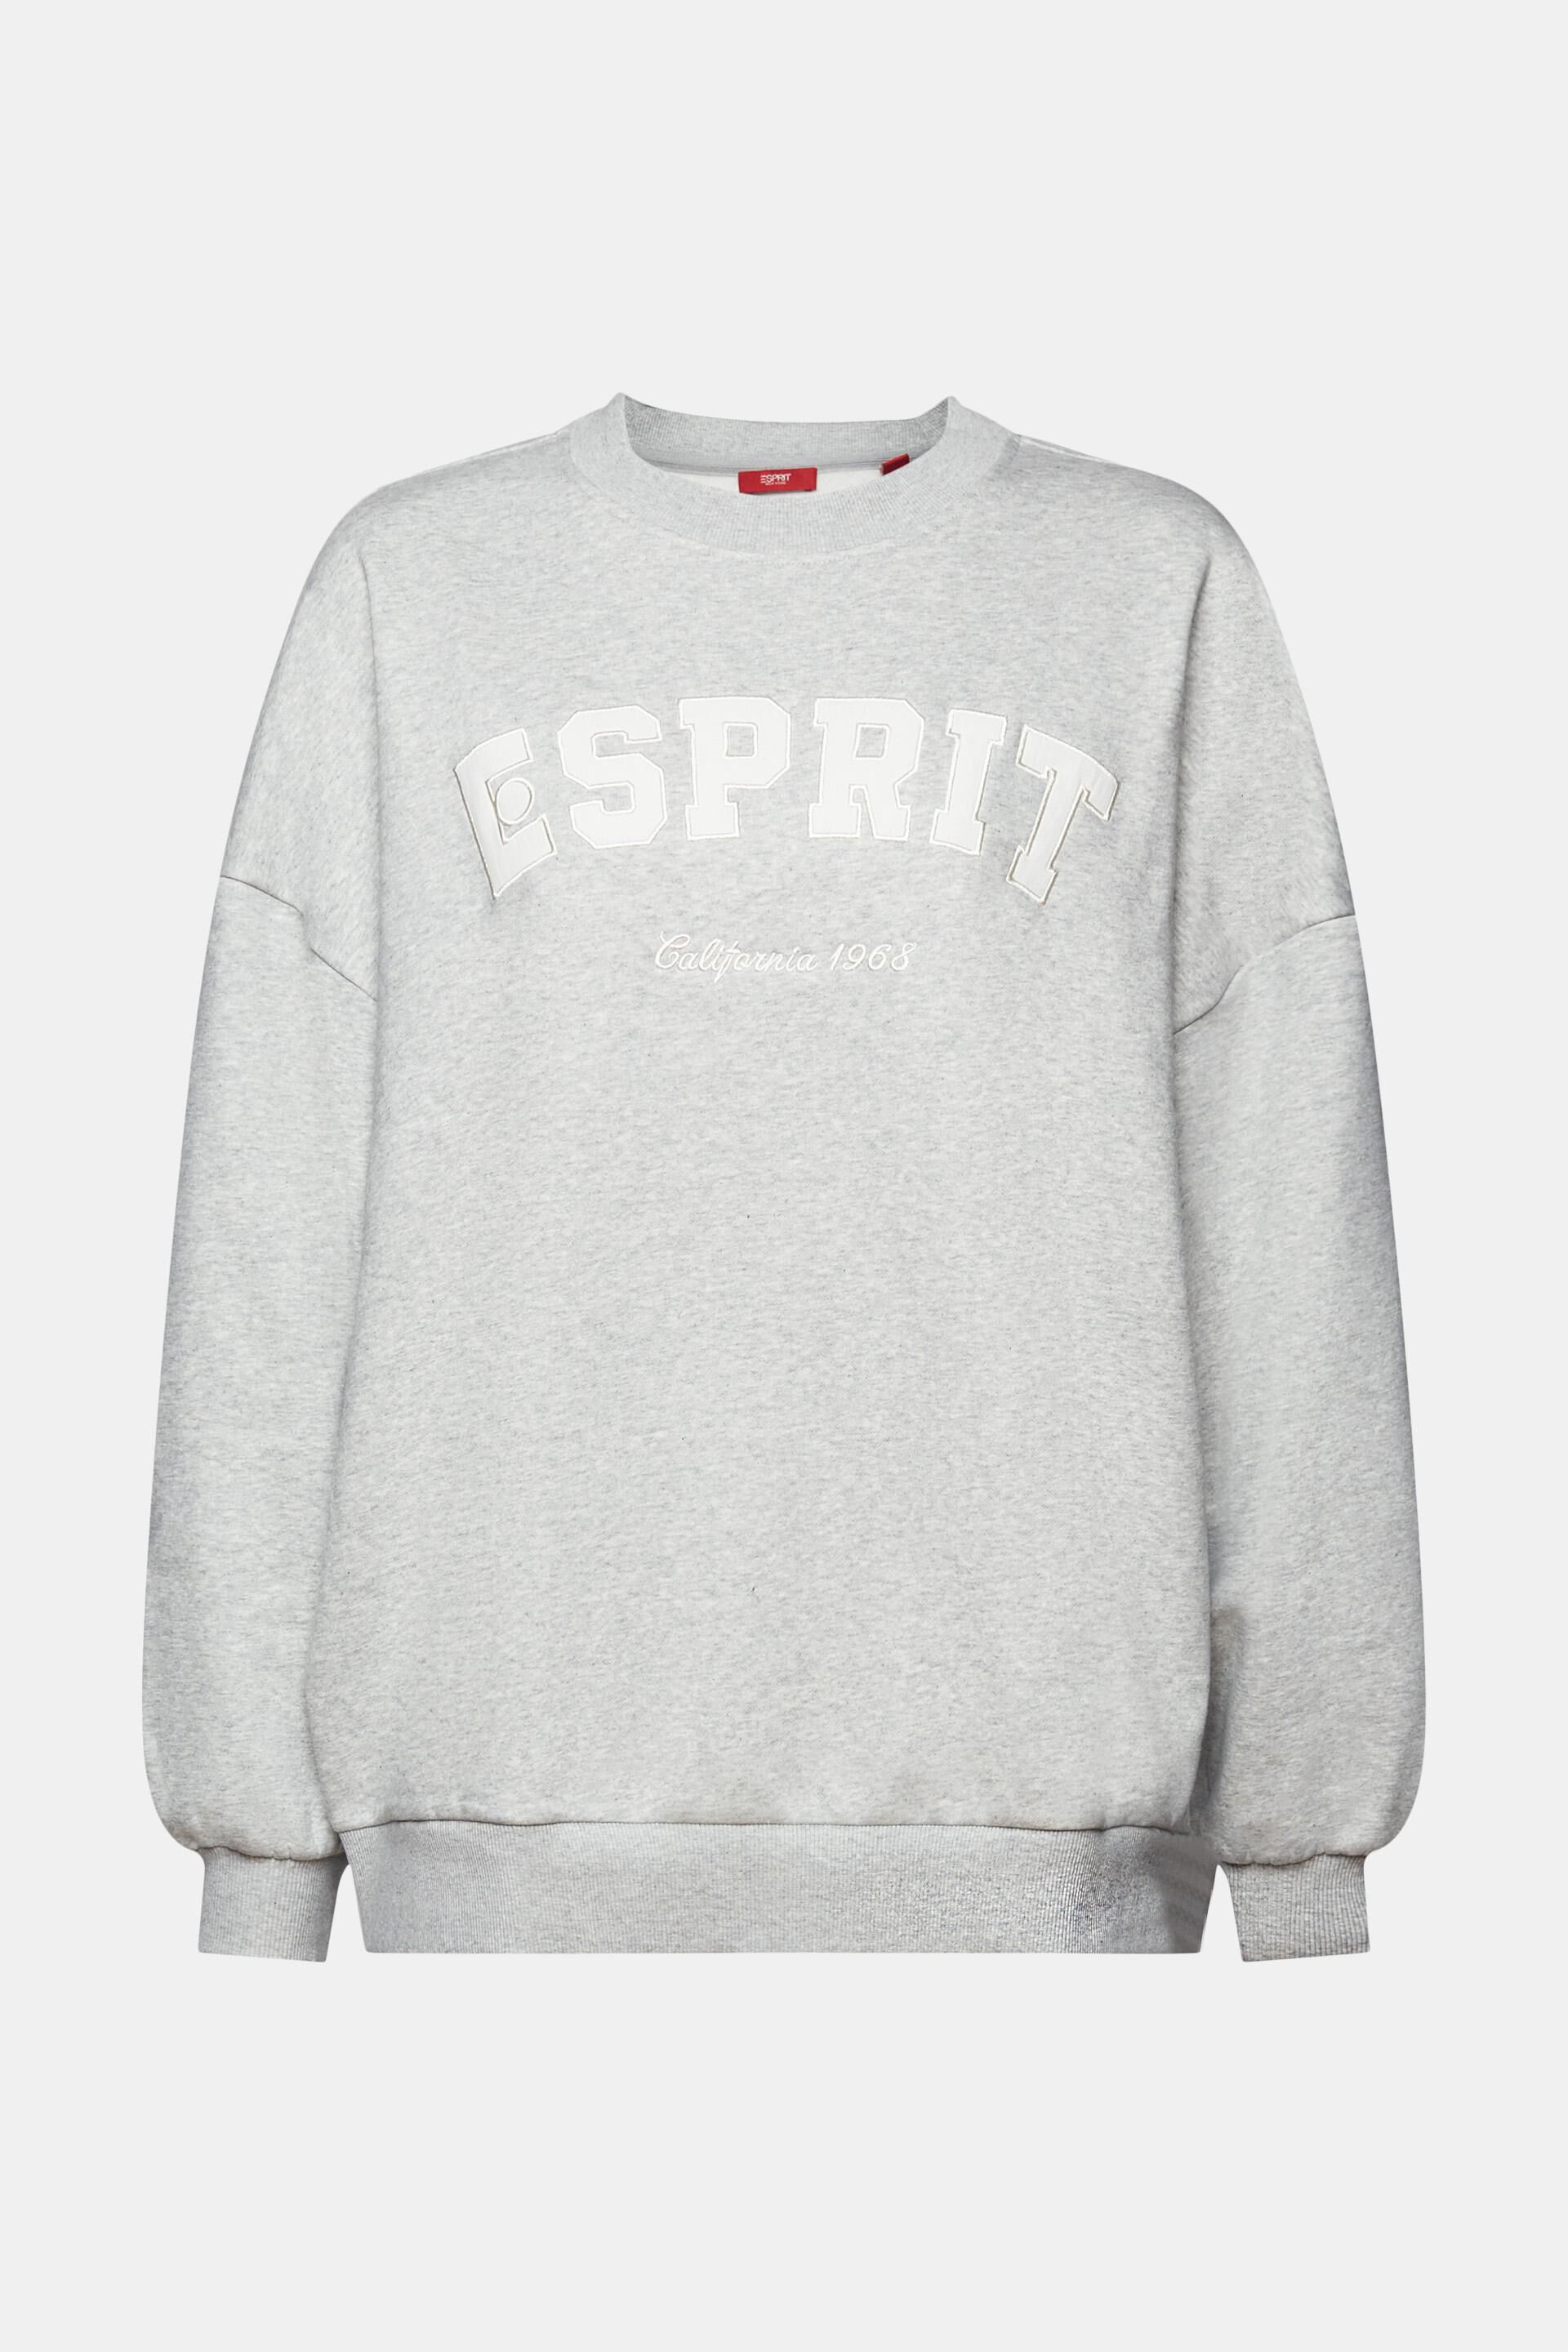 Esprit Sweatshirts